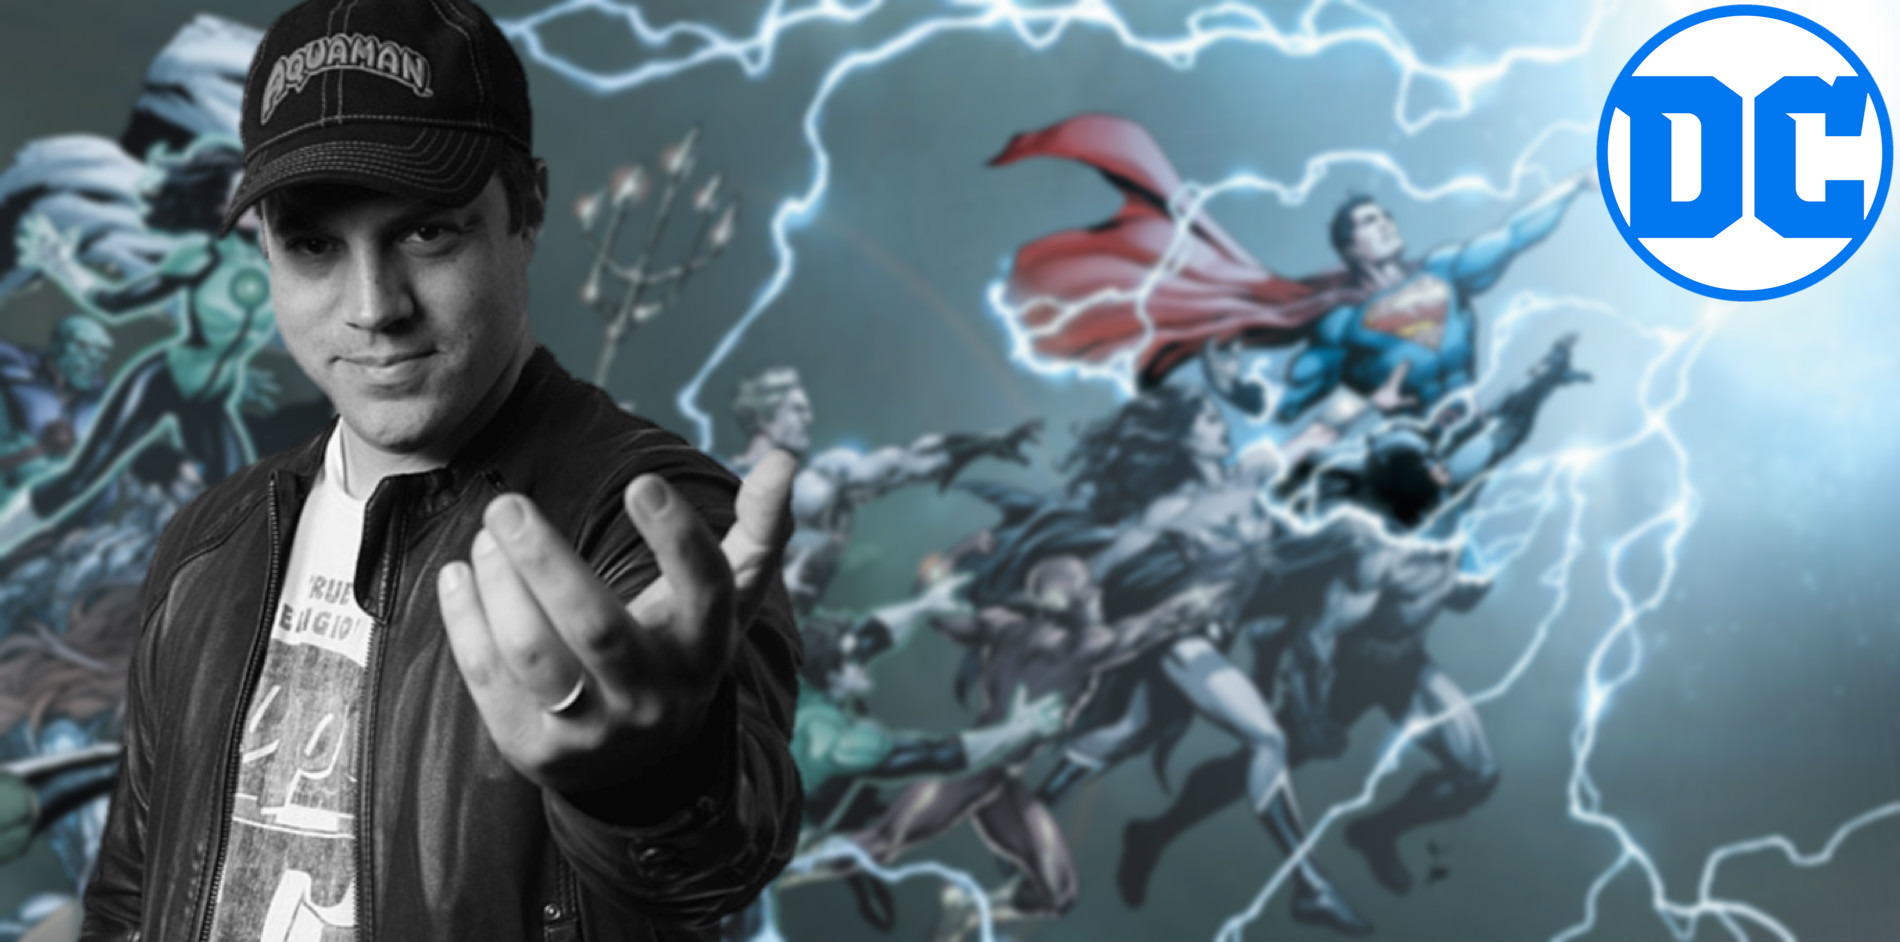 Anunciados grandes cambios para las películas de DC tras el fiasco de Justice League